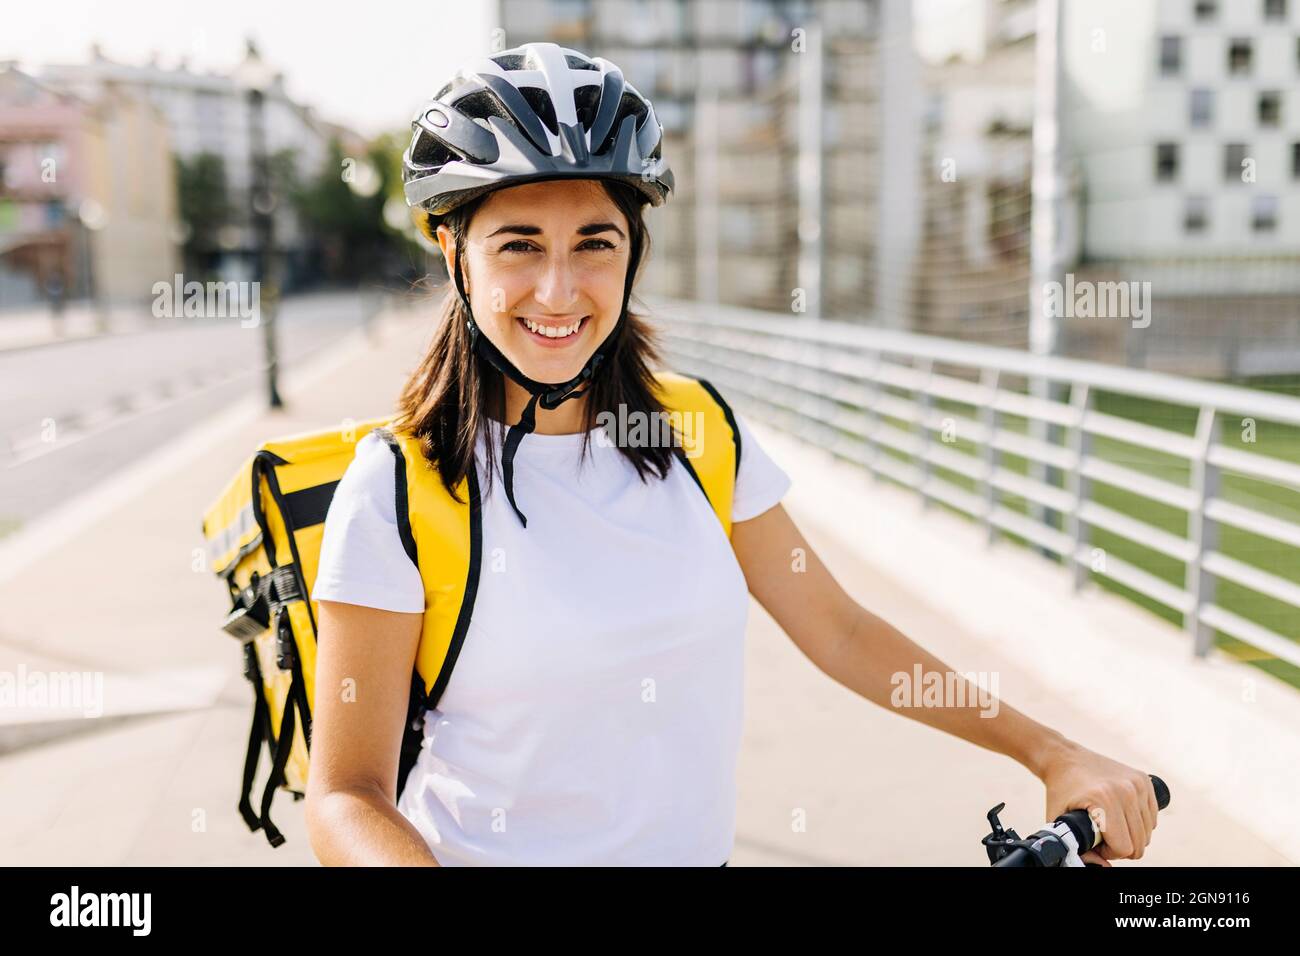 Lächelnde Frau mit essentieller Bedienung, die am sonnigen Tag Fahrradhelm und Lieferrucksack trägt Stockfoto